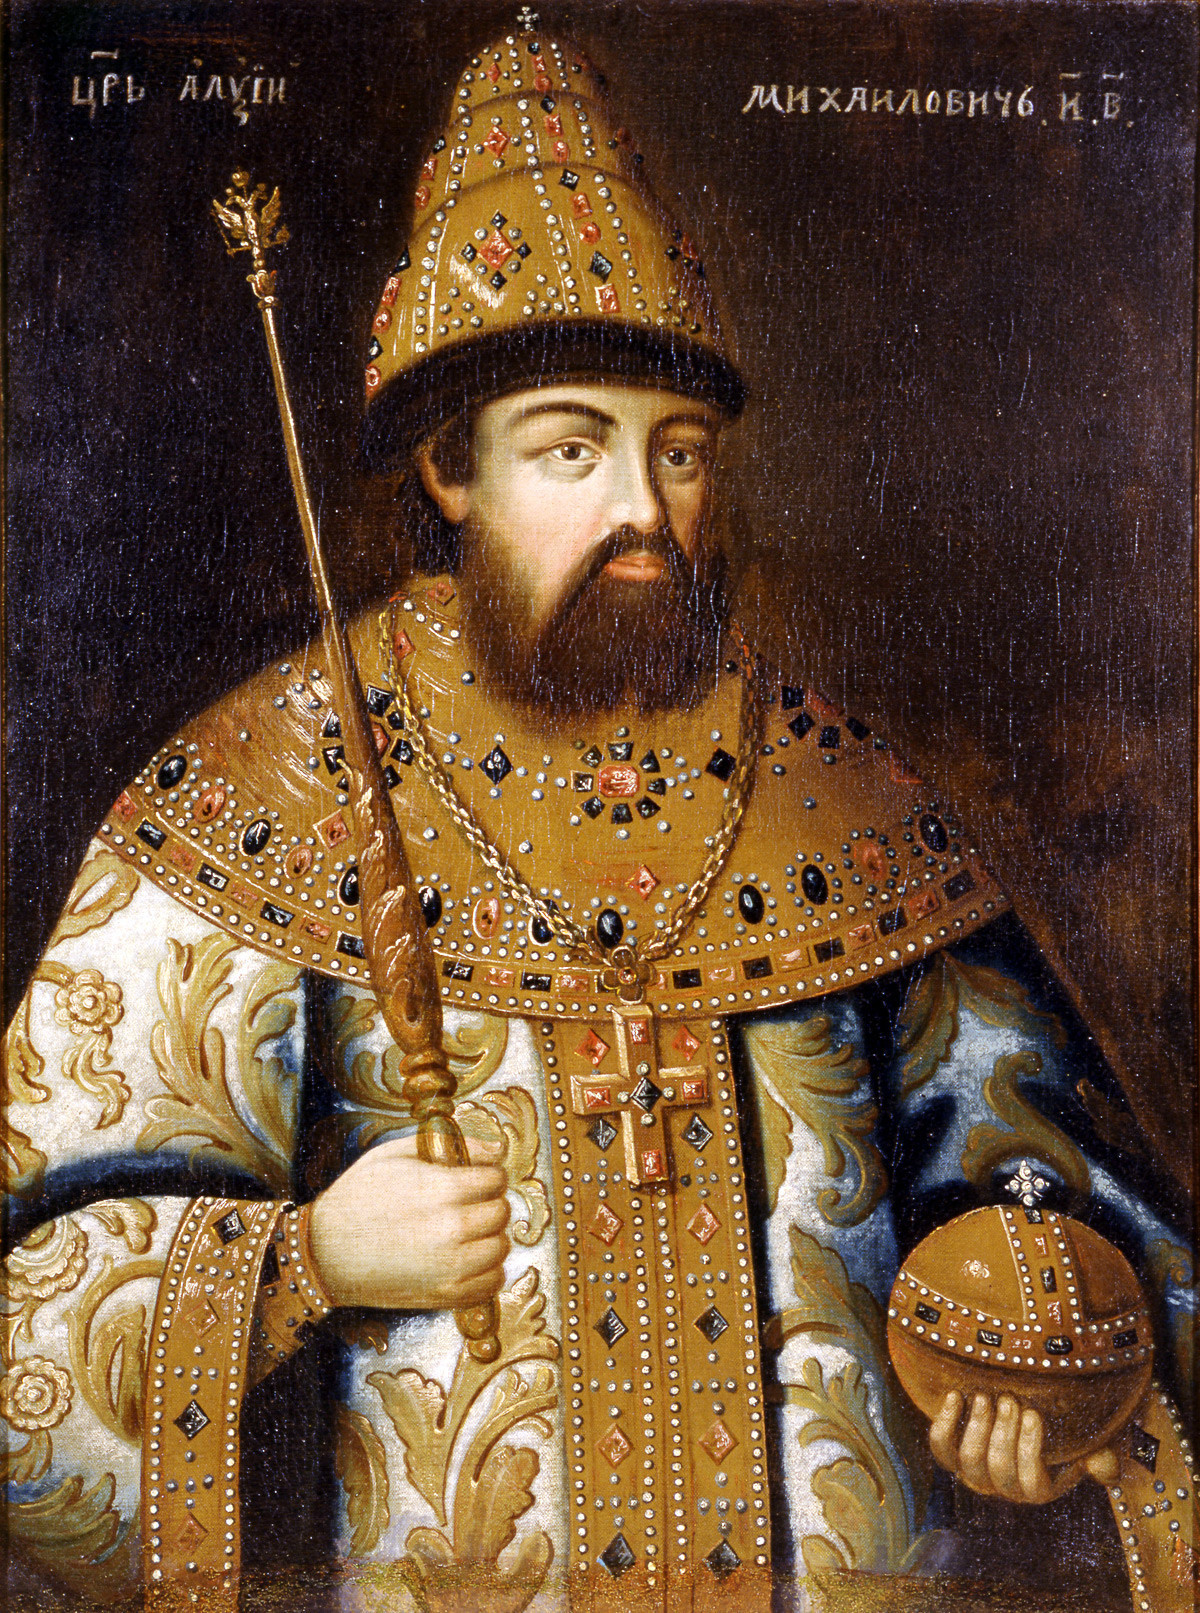 Aleksej I. (1629.-1676.), drugi ruski car iz dinastije Romanov, vladao 1645.-1676., otac Petra I. Nepoznati umjetnik. Reprodukcija.

